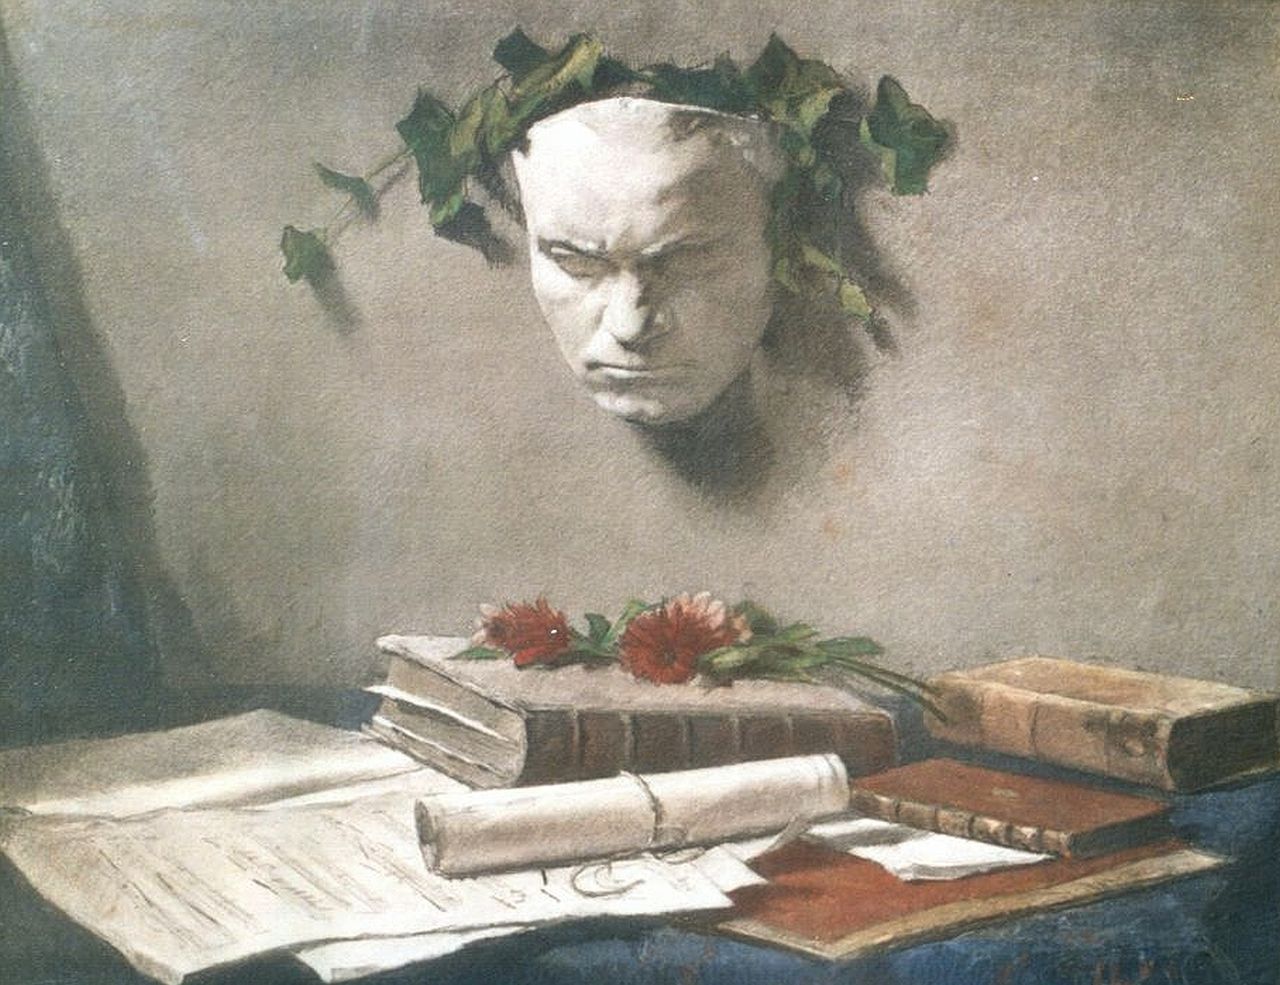 Garf S.  | Salomon Garf, Memorabilia L. von Beethoven, krijt op papier 38,8 x 48,2 cm, gesigneerd linksonder